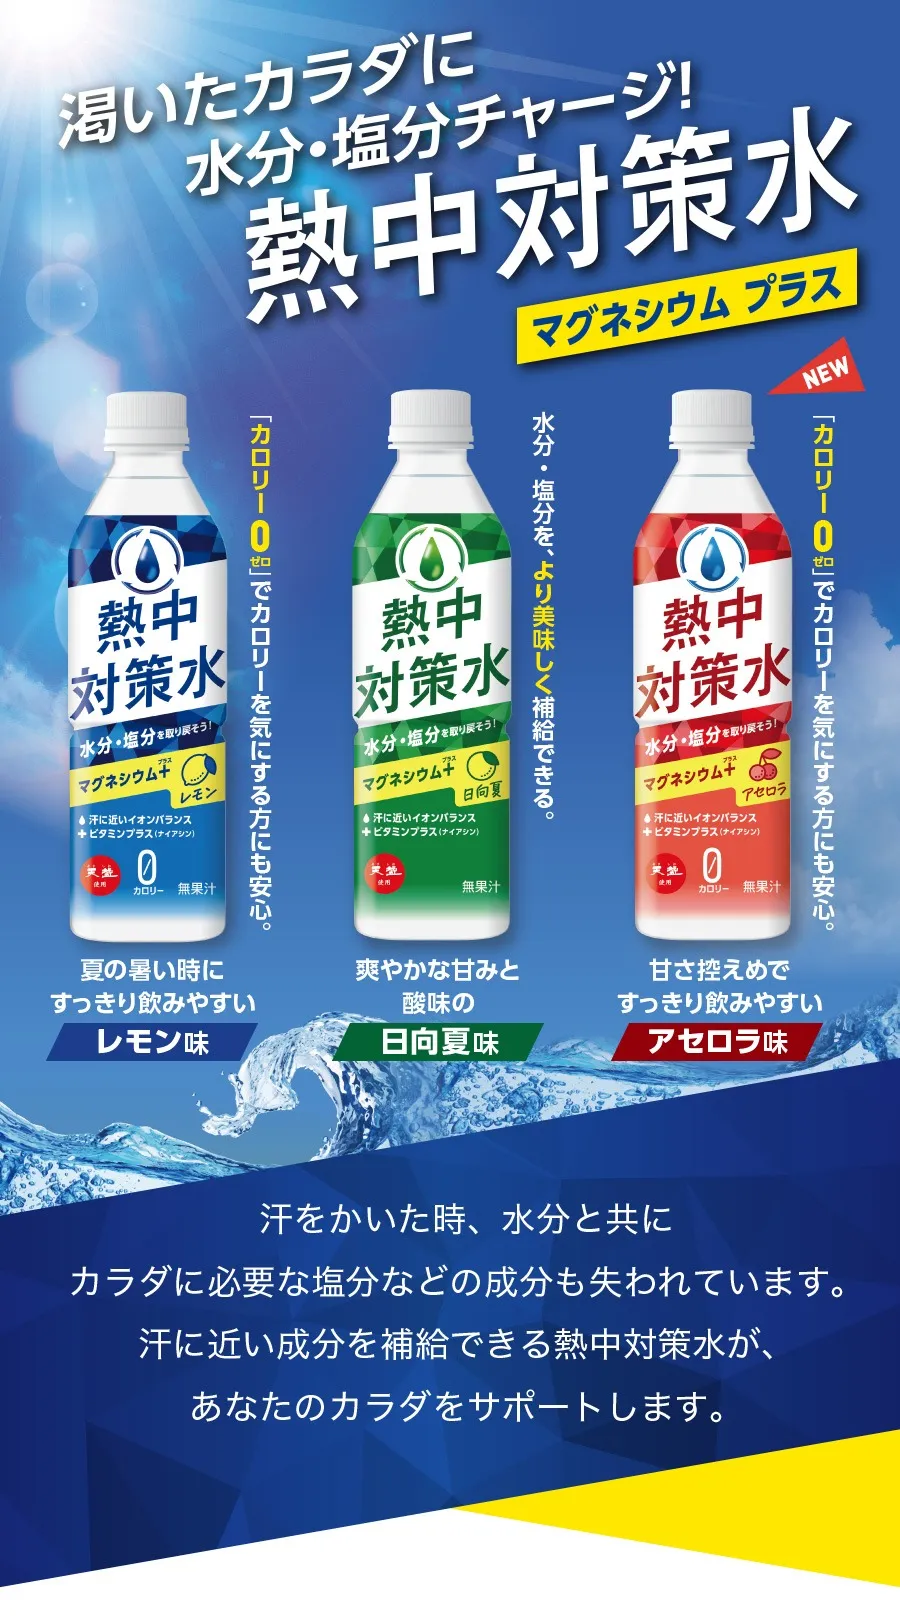 【大阪市】熱中症対策飲料を販売しております。